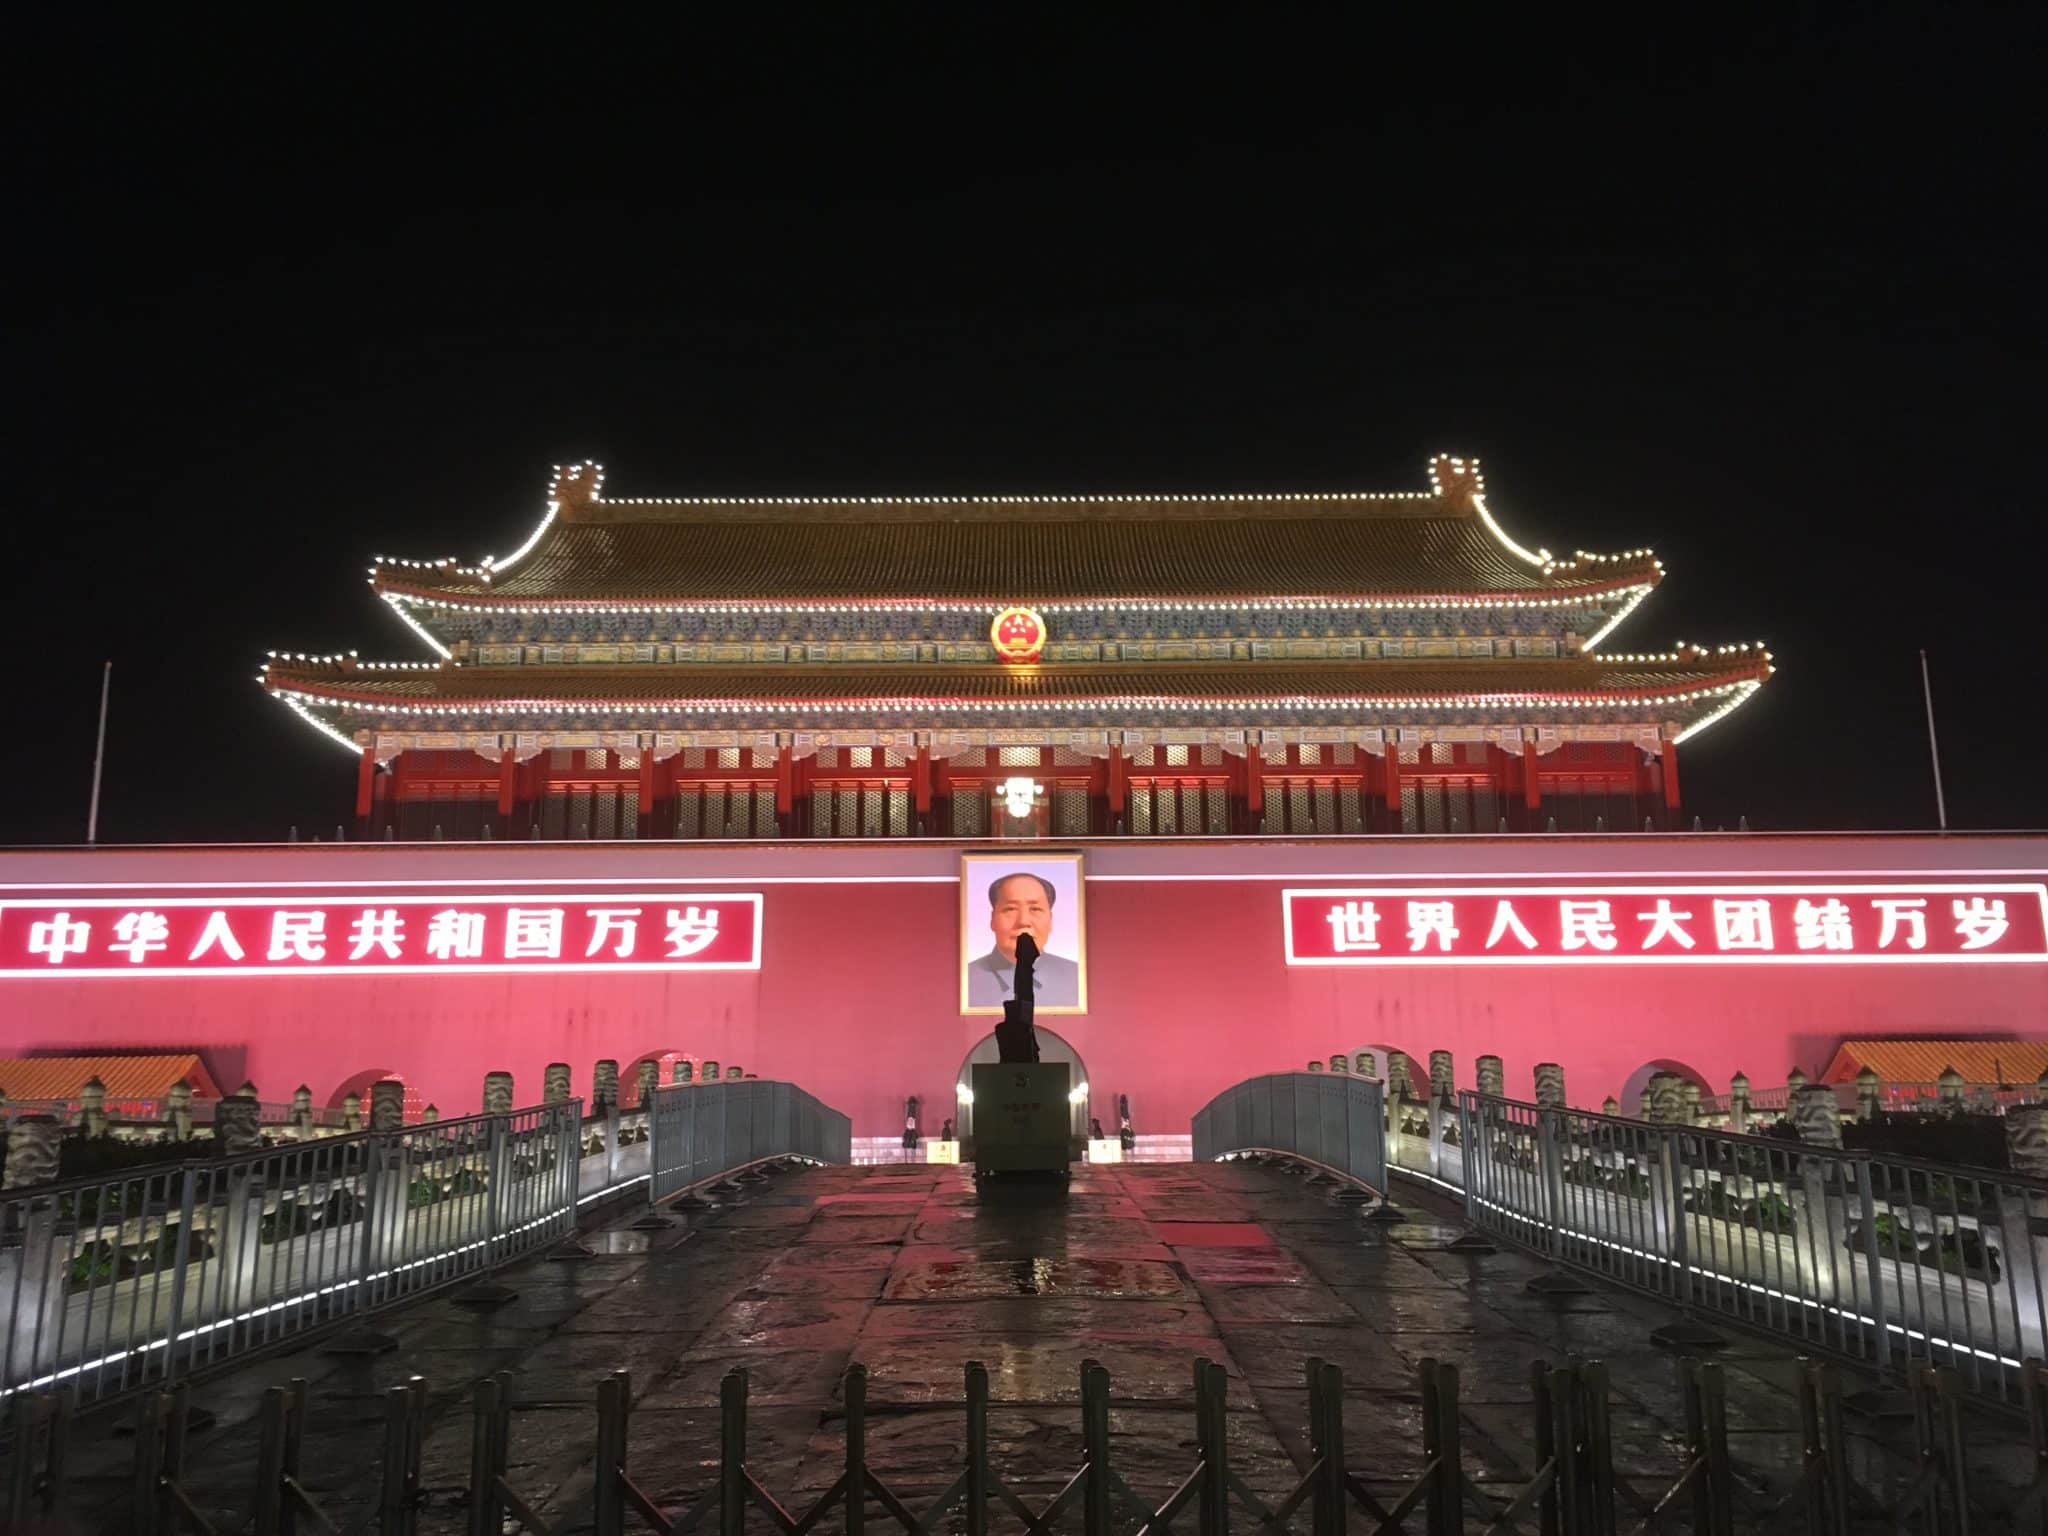 Place Tian'anmen à Beijing dans notre article Itinéraire en Chine du Nord : 10 jours en Chine de Beijing à Xian jusqu’au fleuve Jaune #chine #chinedunord #itinerairechine #voyage #10joursenchine 